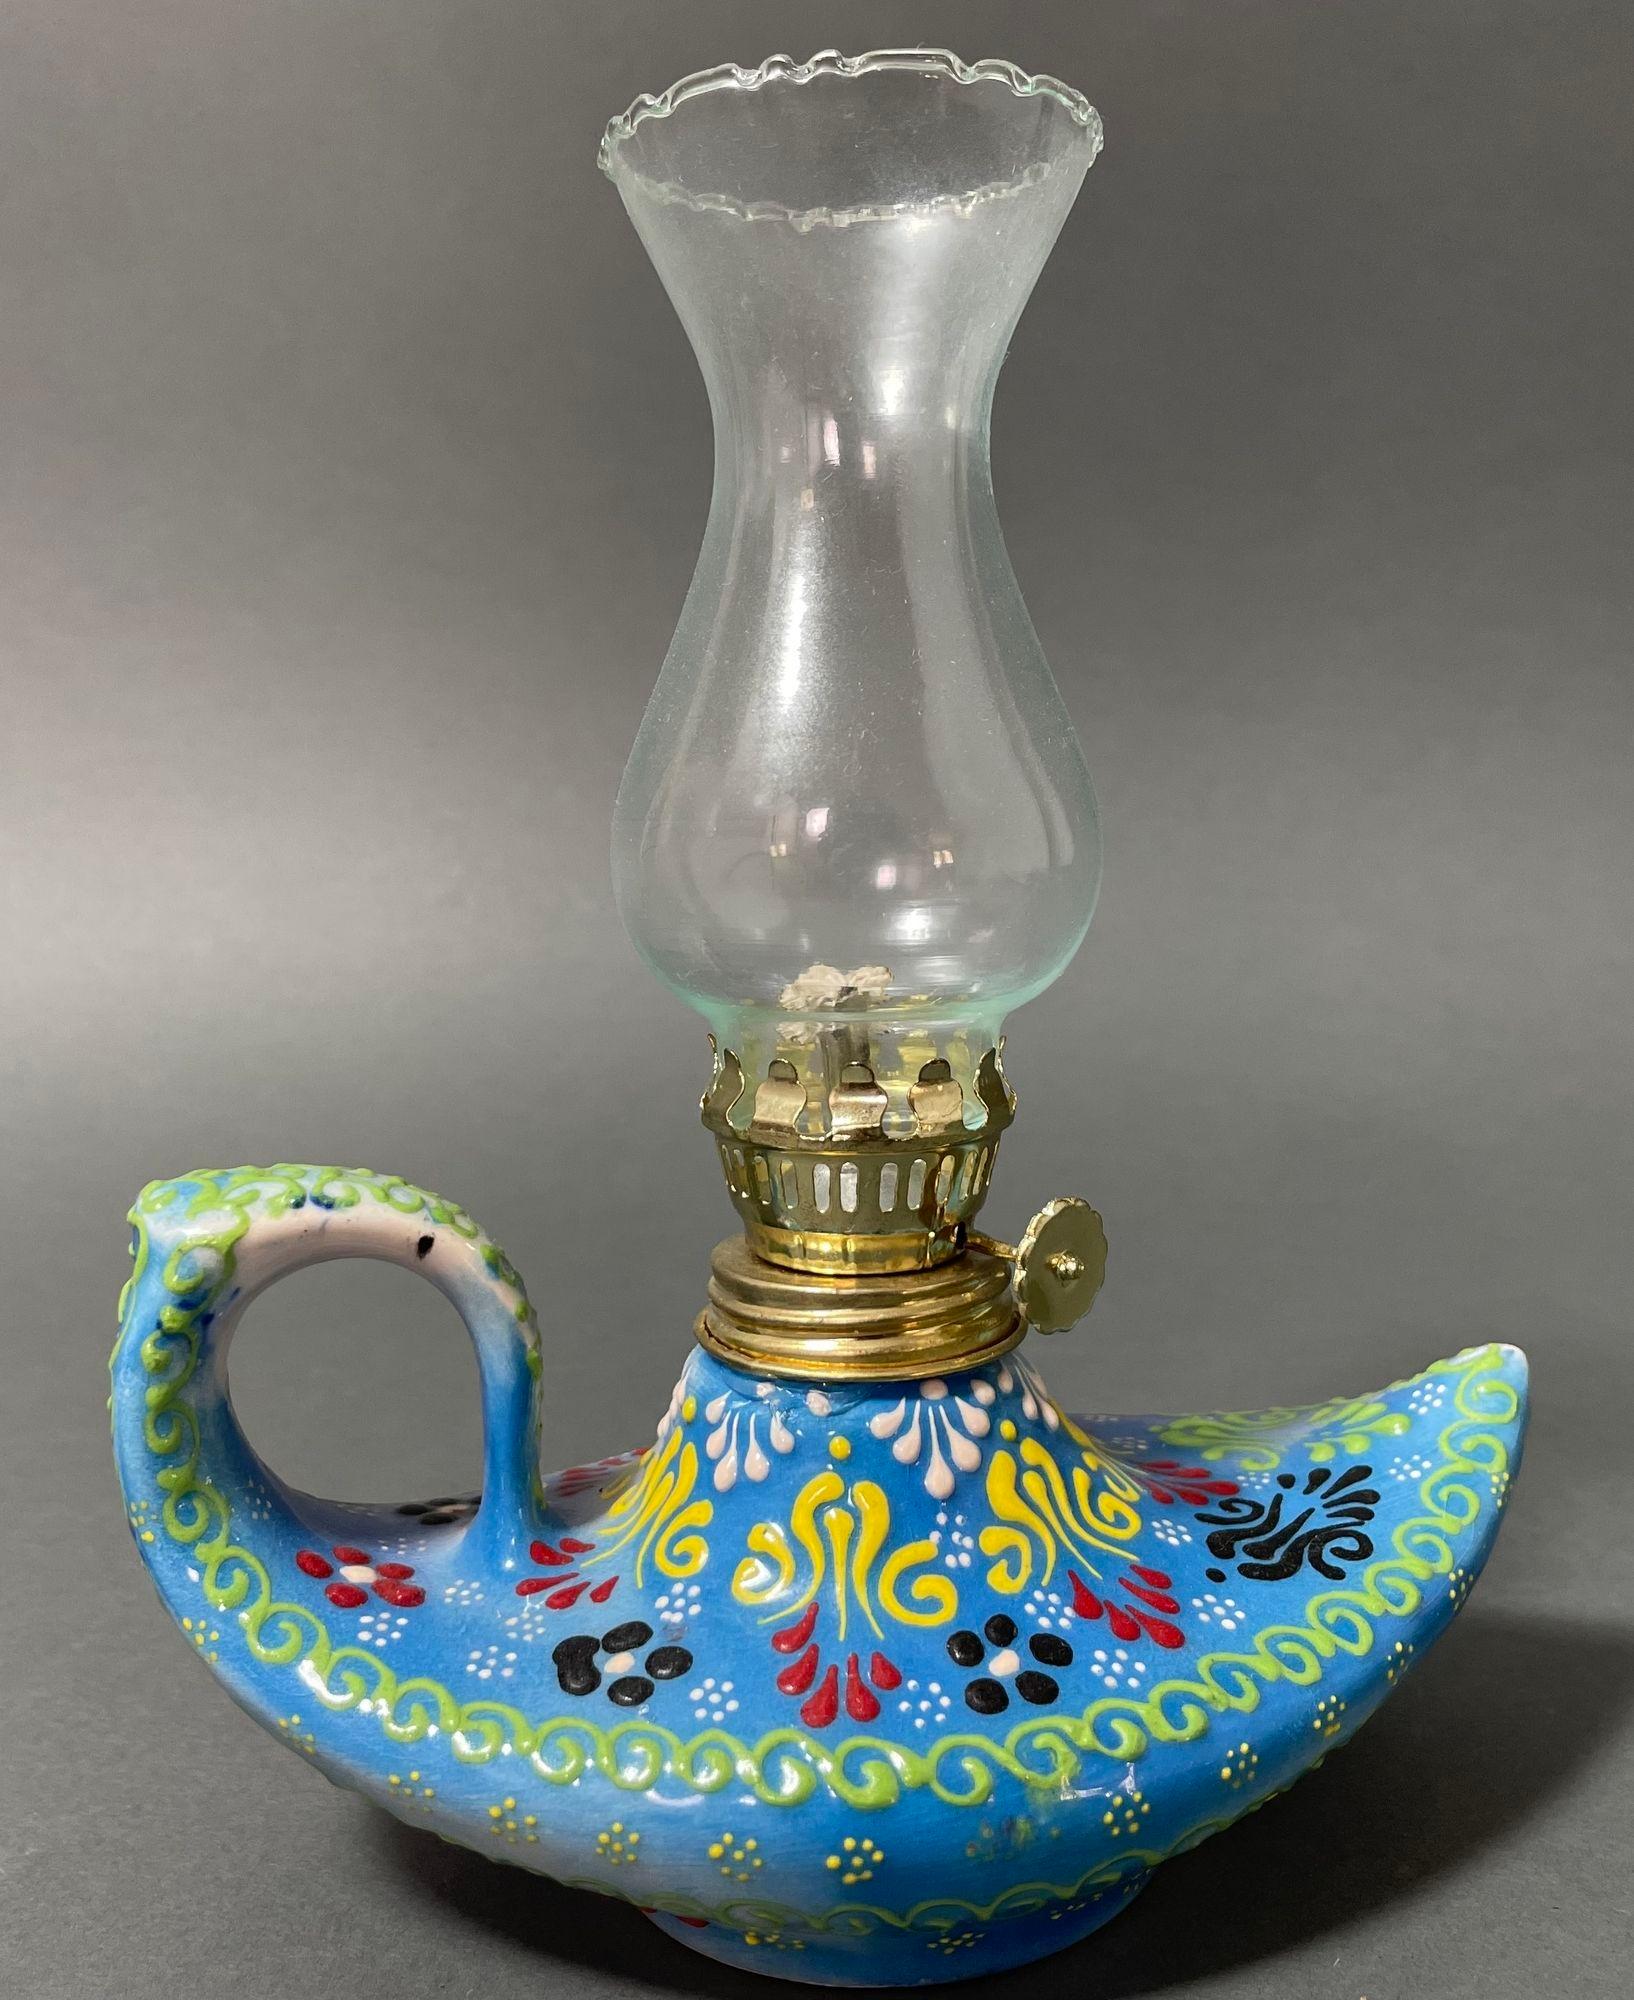 Lampe à huile turque en céramique bleu turquoise fabriquée à la main, lampe à huile ouragan, lanterne.
Cette lampe à huile vintage a une base en poterie qui évoque une lampe d'Aladin des Mille et une nuits.
Céramique texturée peinte à la main avec